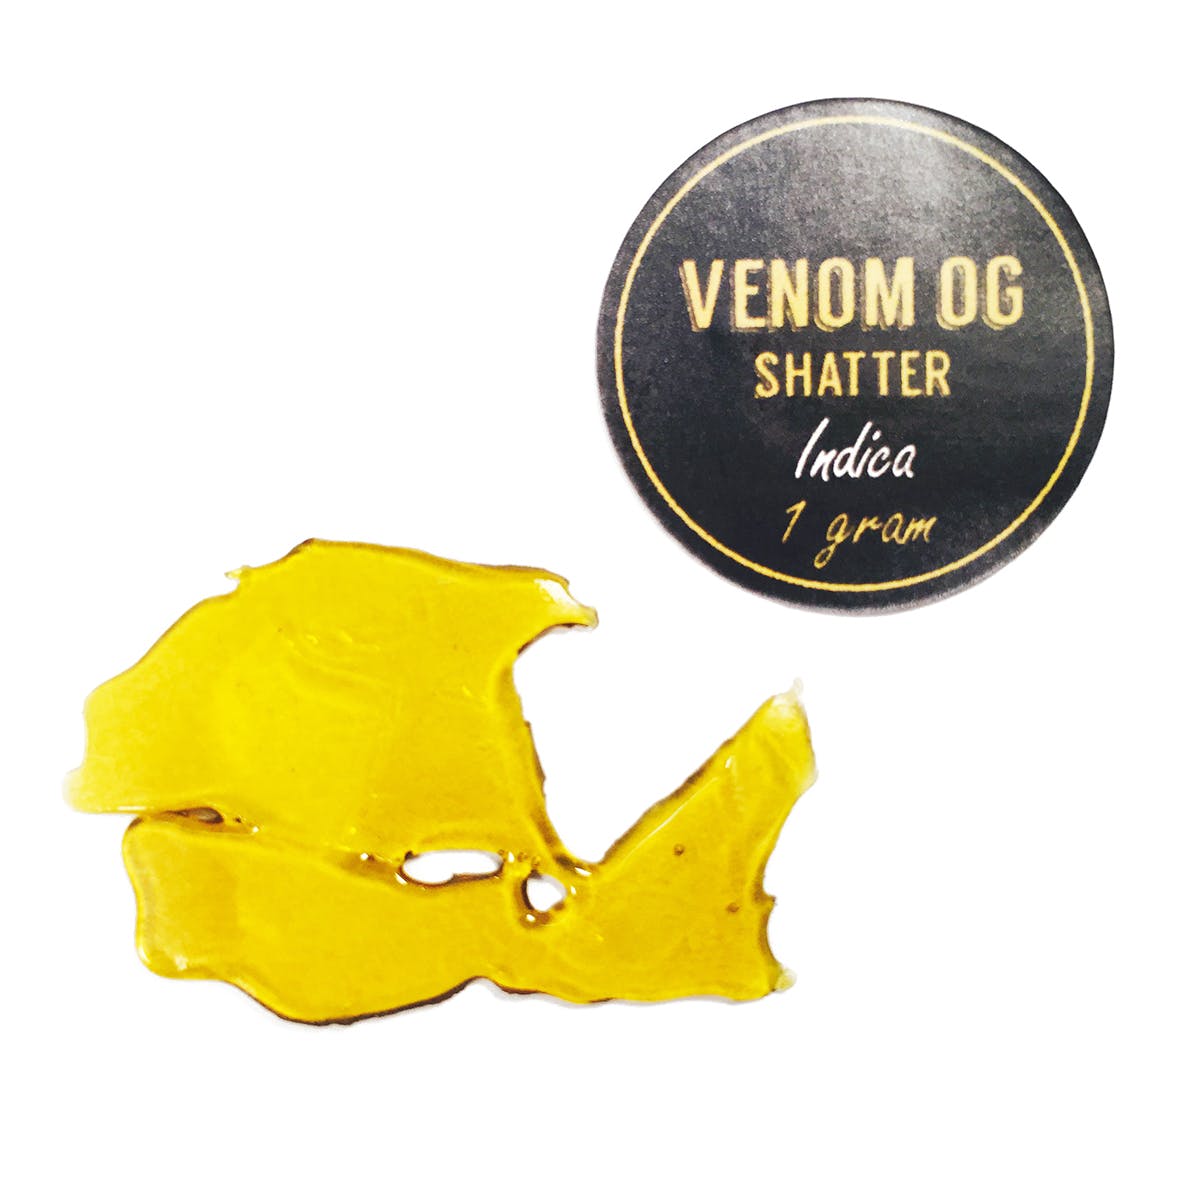 Venom OG Shatter